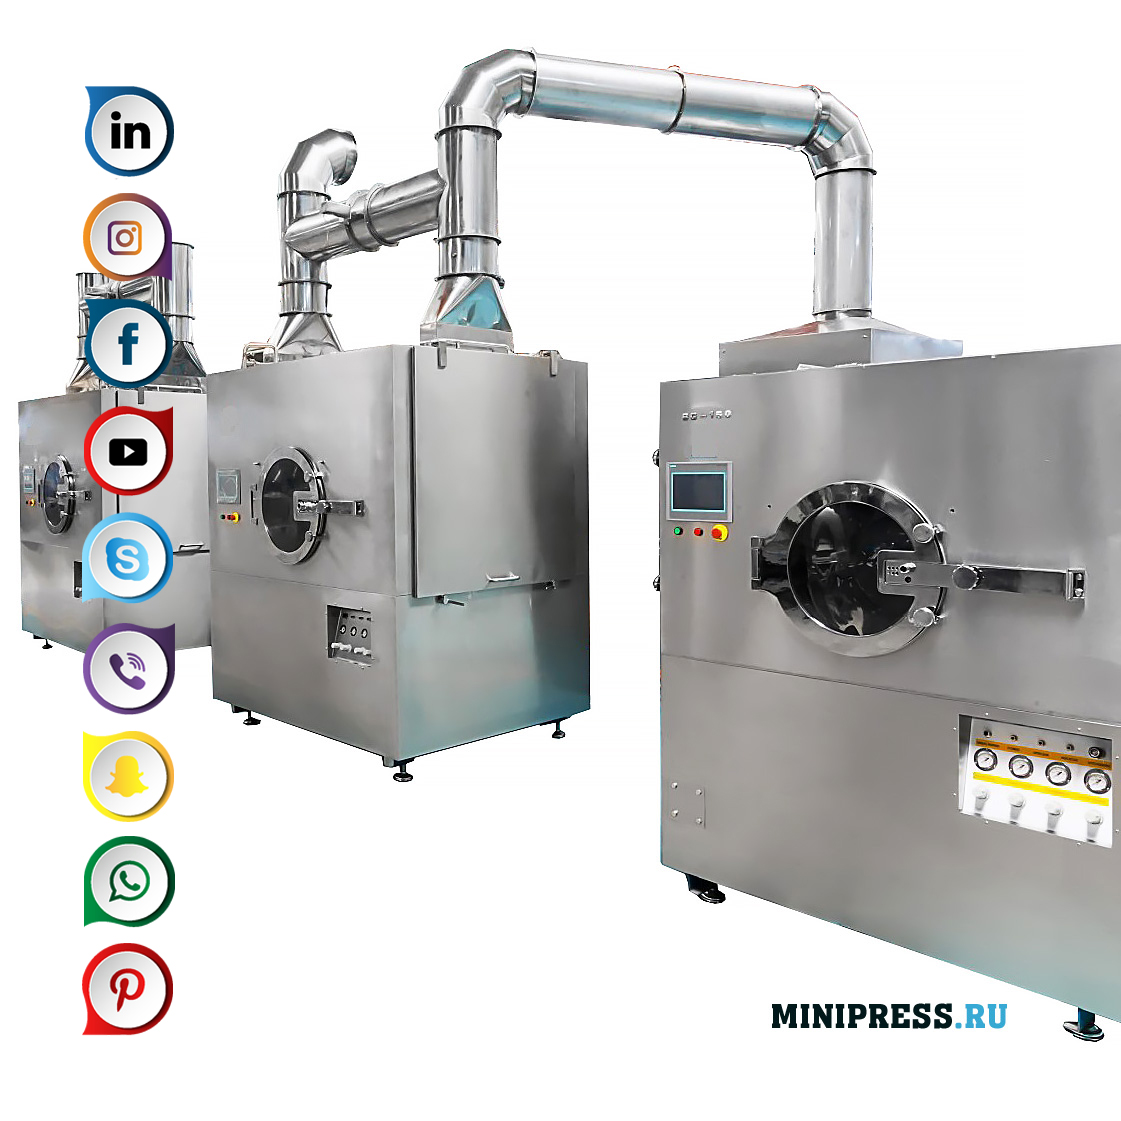 Maskine til fremstilling af drageer og belægningstabletter med en skal fremstillet af polymermaterialer